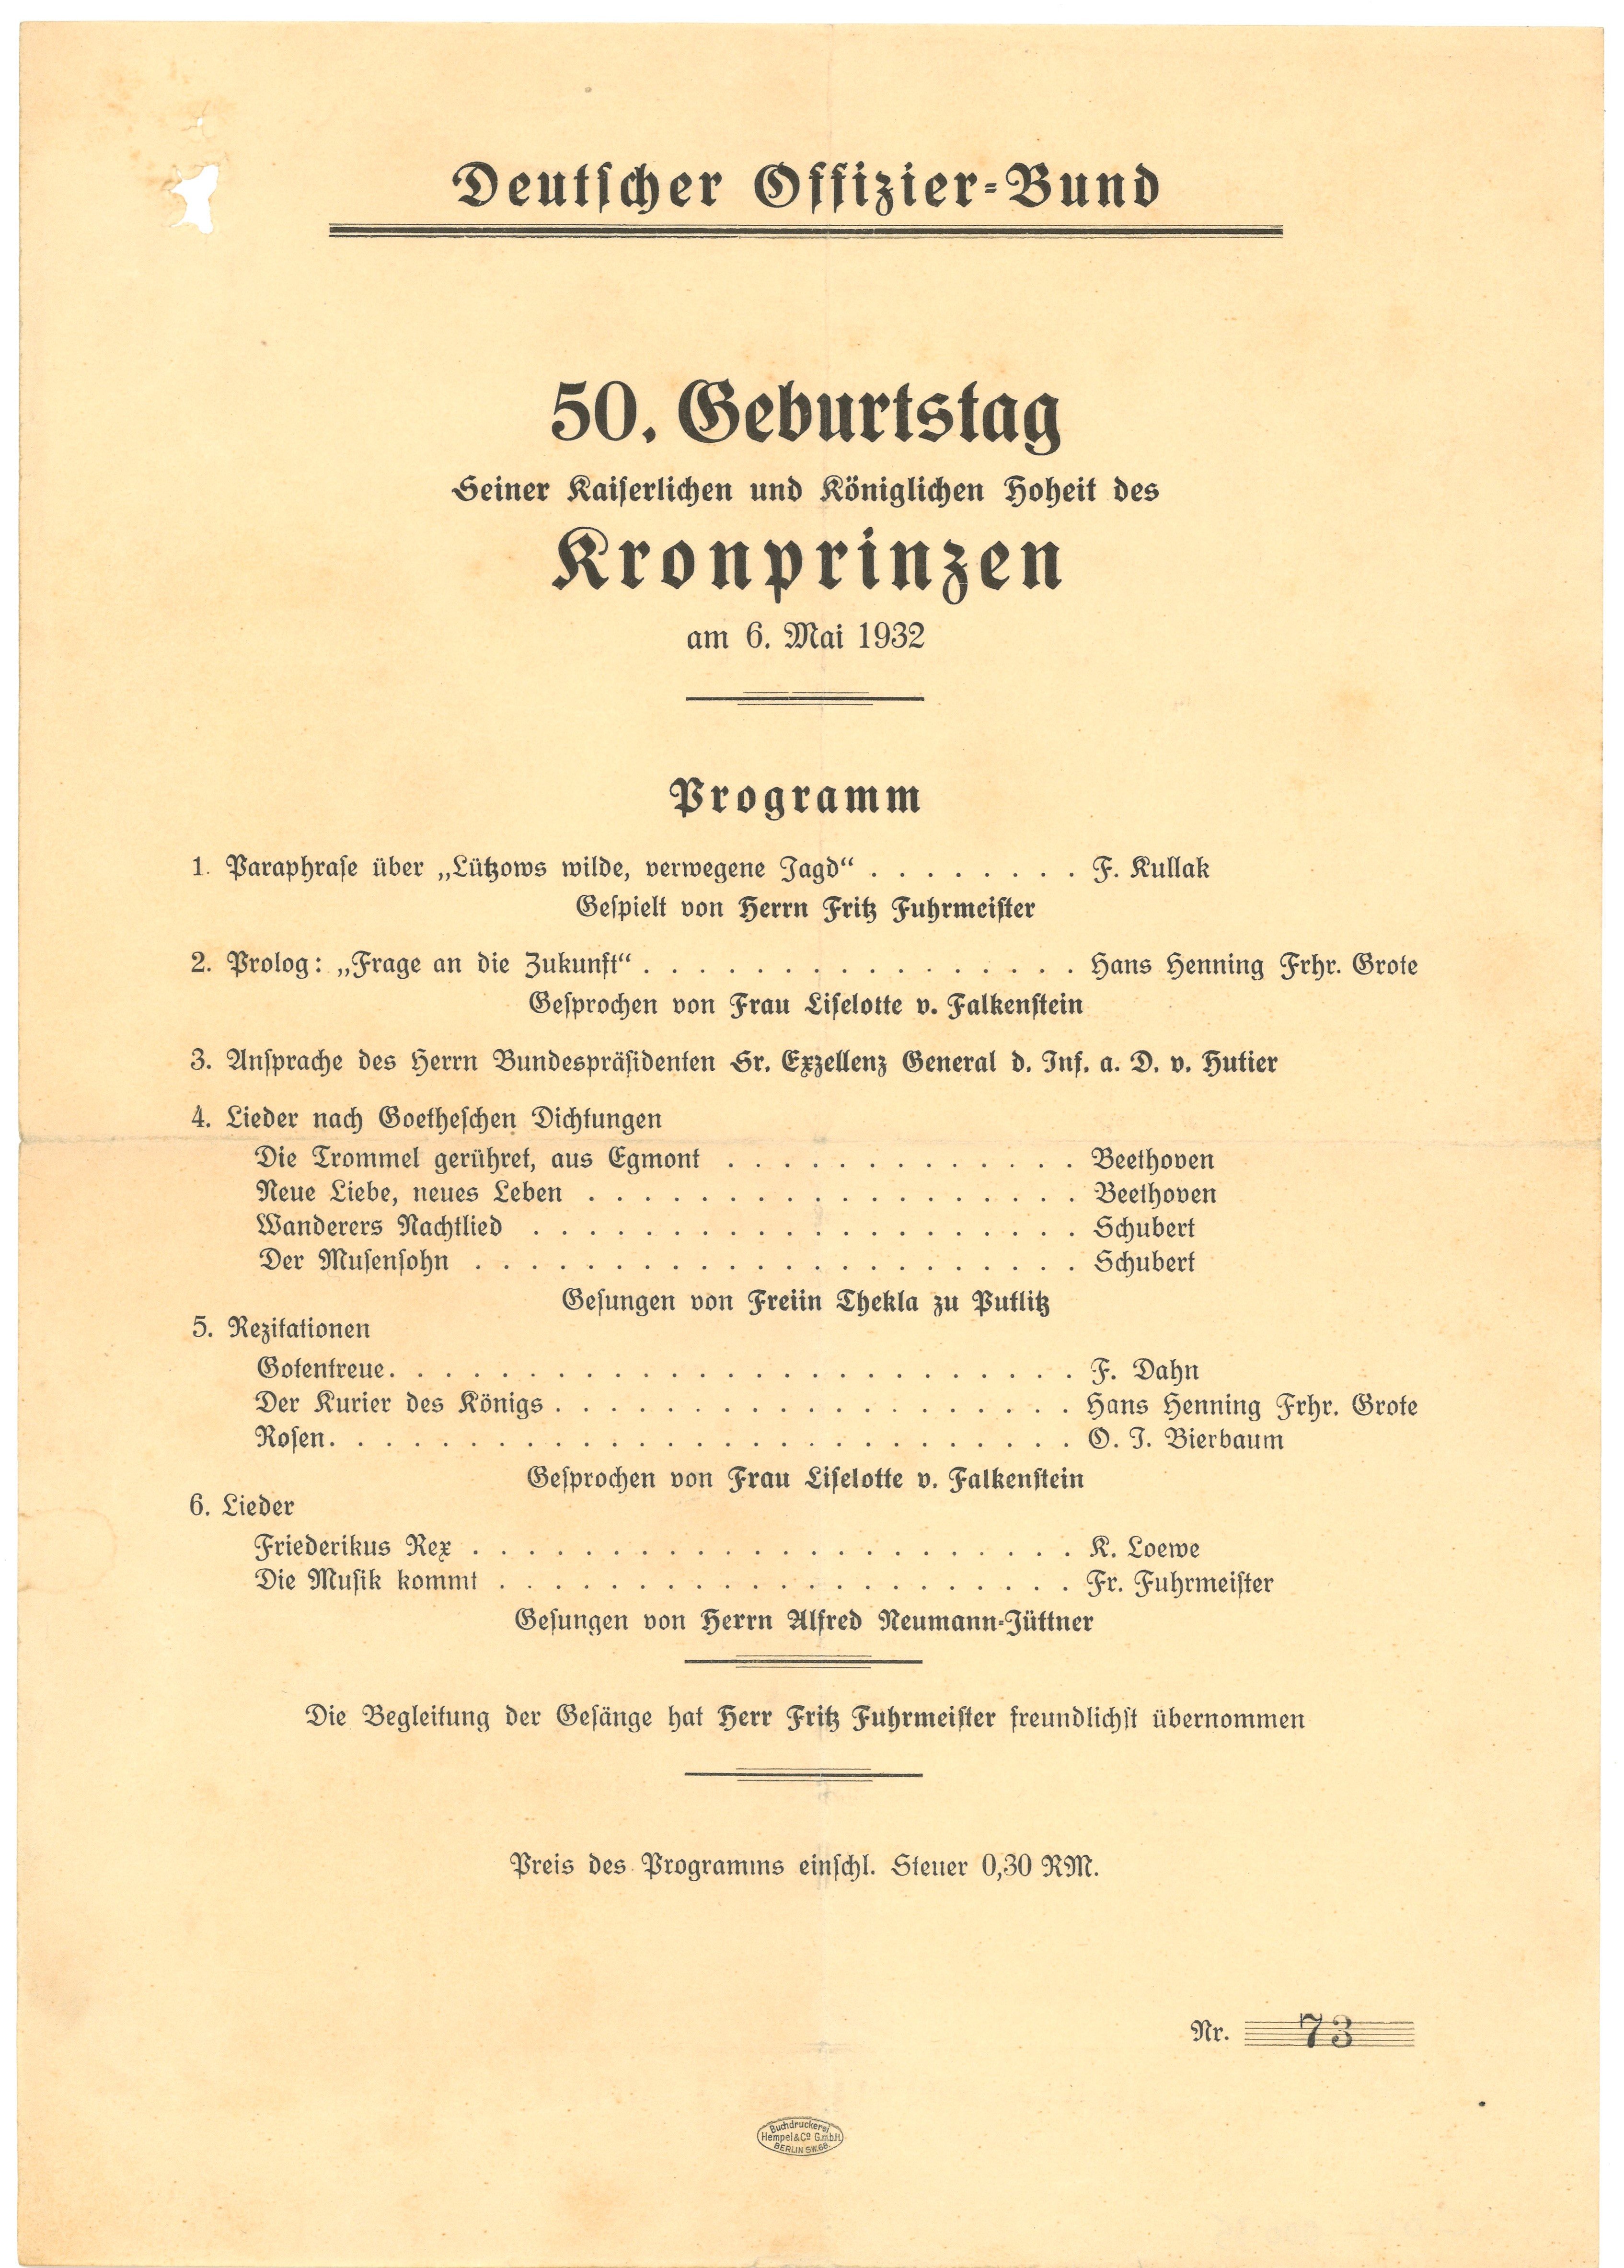 Programm des Deutschen Offizier-Bundes zum 50. Geburtstag des Kronprinzen Wilhelm 1932 (Landesgeschichtliche Vereinigung für die Mark Brandenburg e.V., Archiv CC BY)